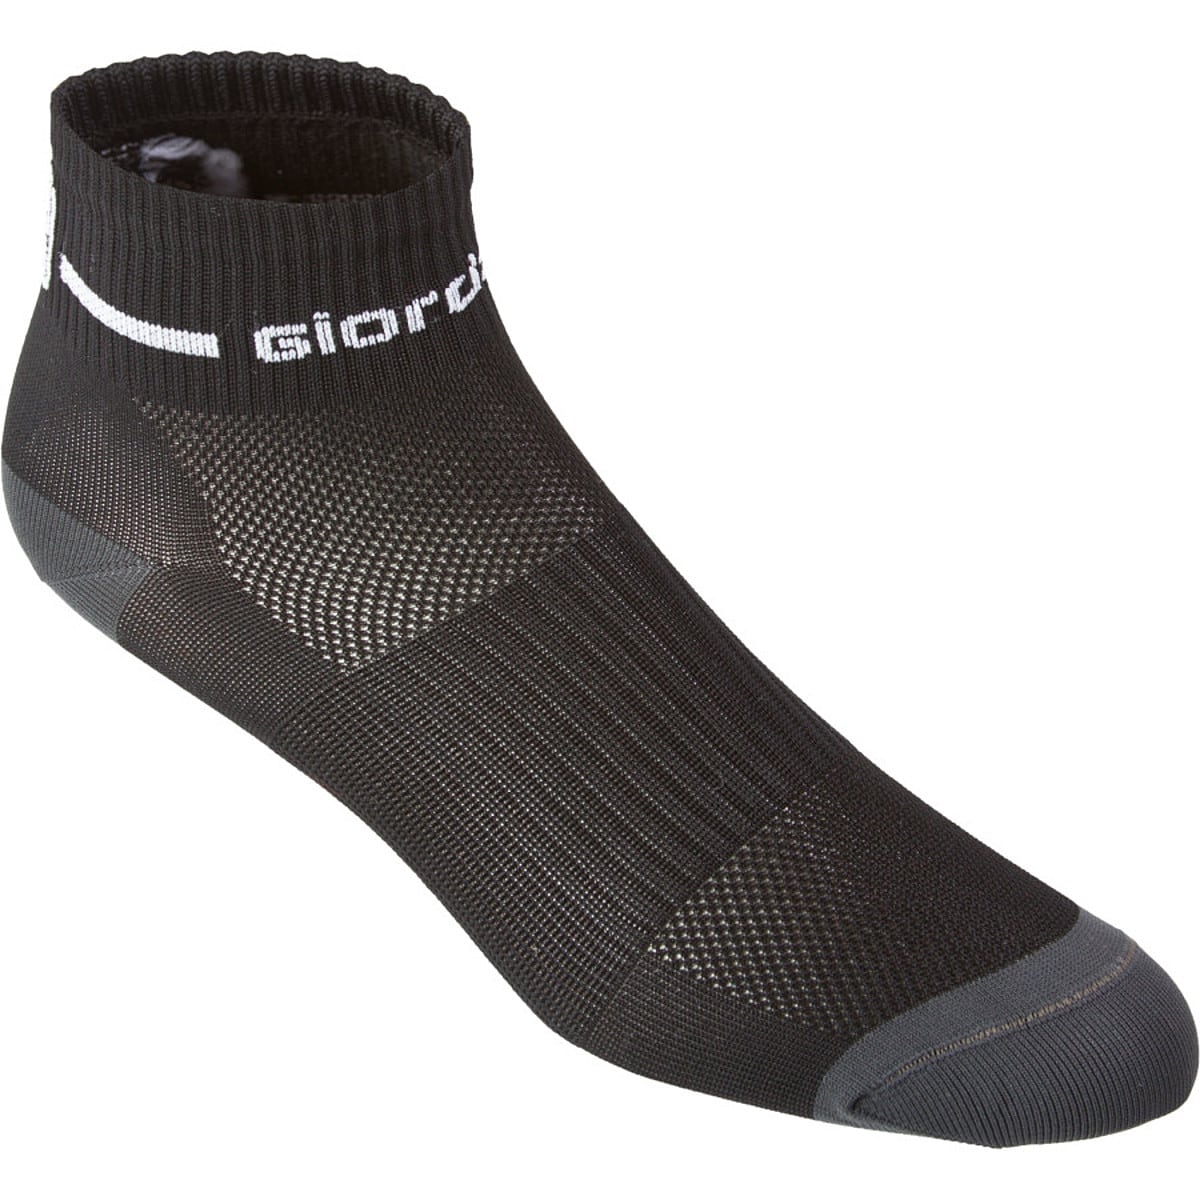 Giordana Trade Short Cuff Sock - Women's